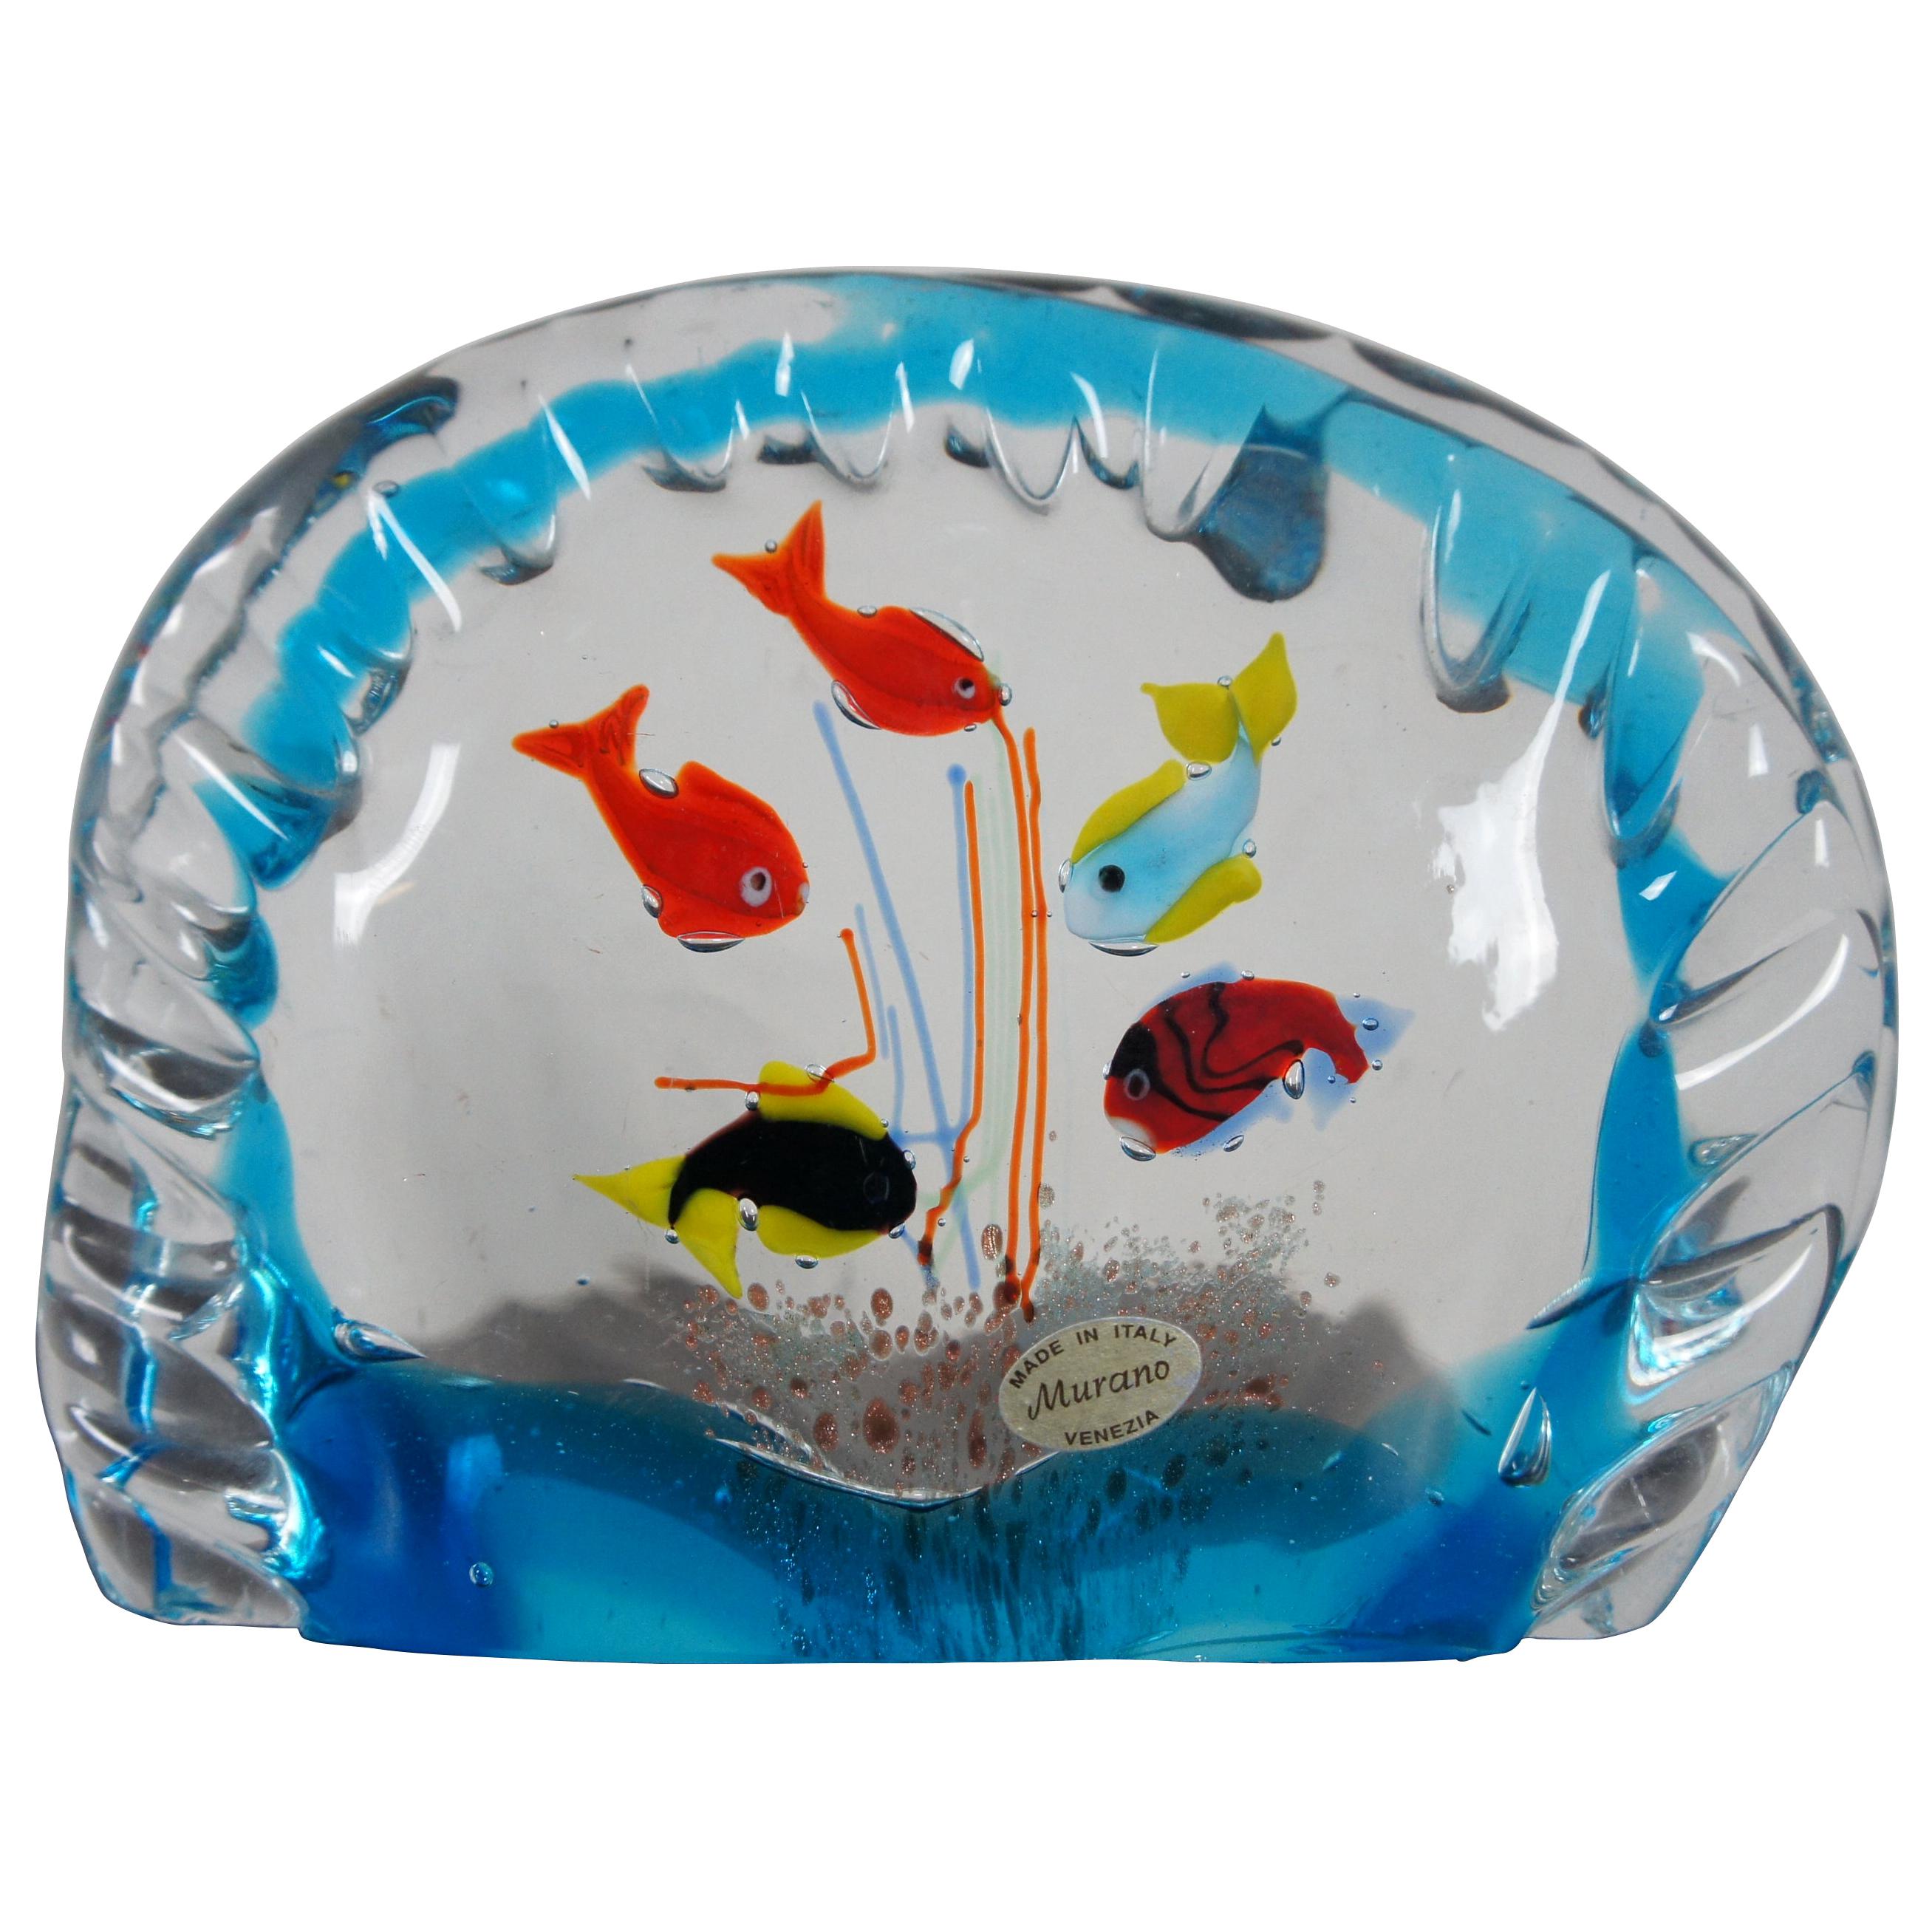 Original Murano Hand Blown Italian Art Glass Aquarium Fish Bowl Paperweight